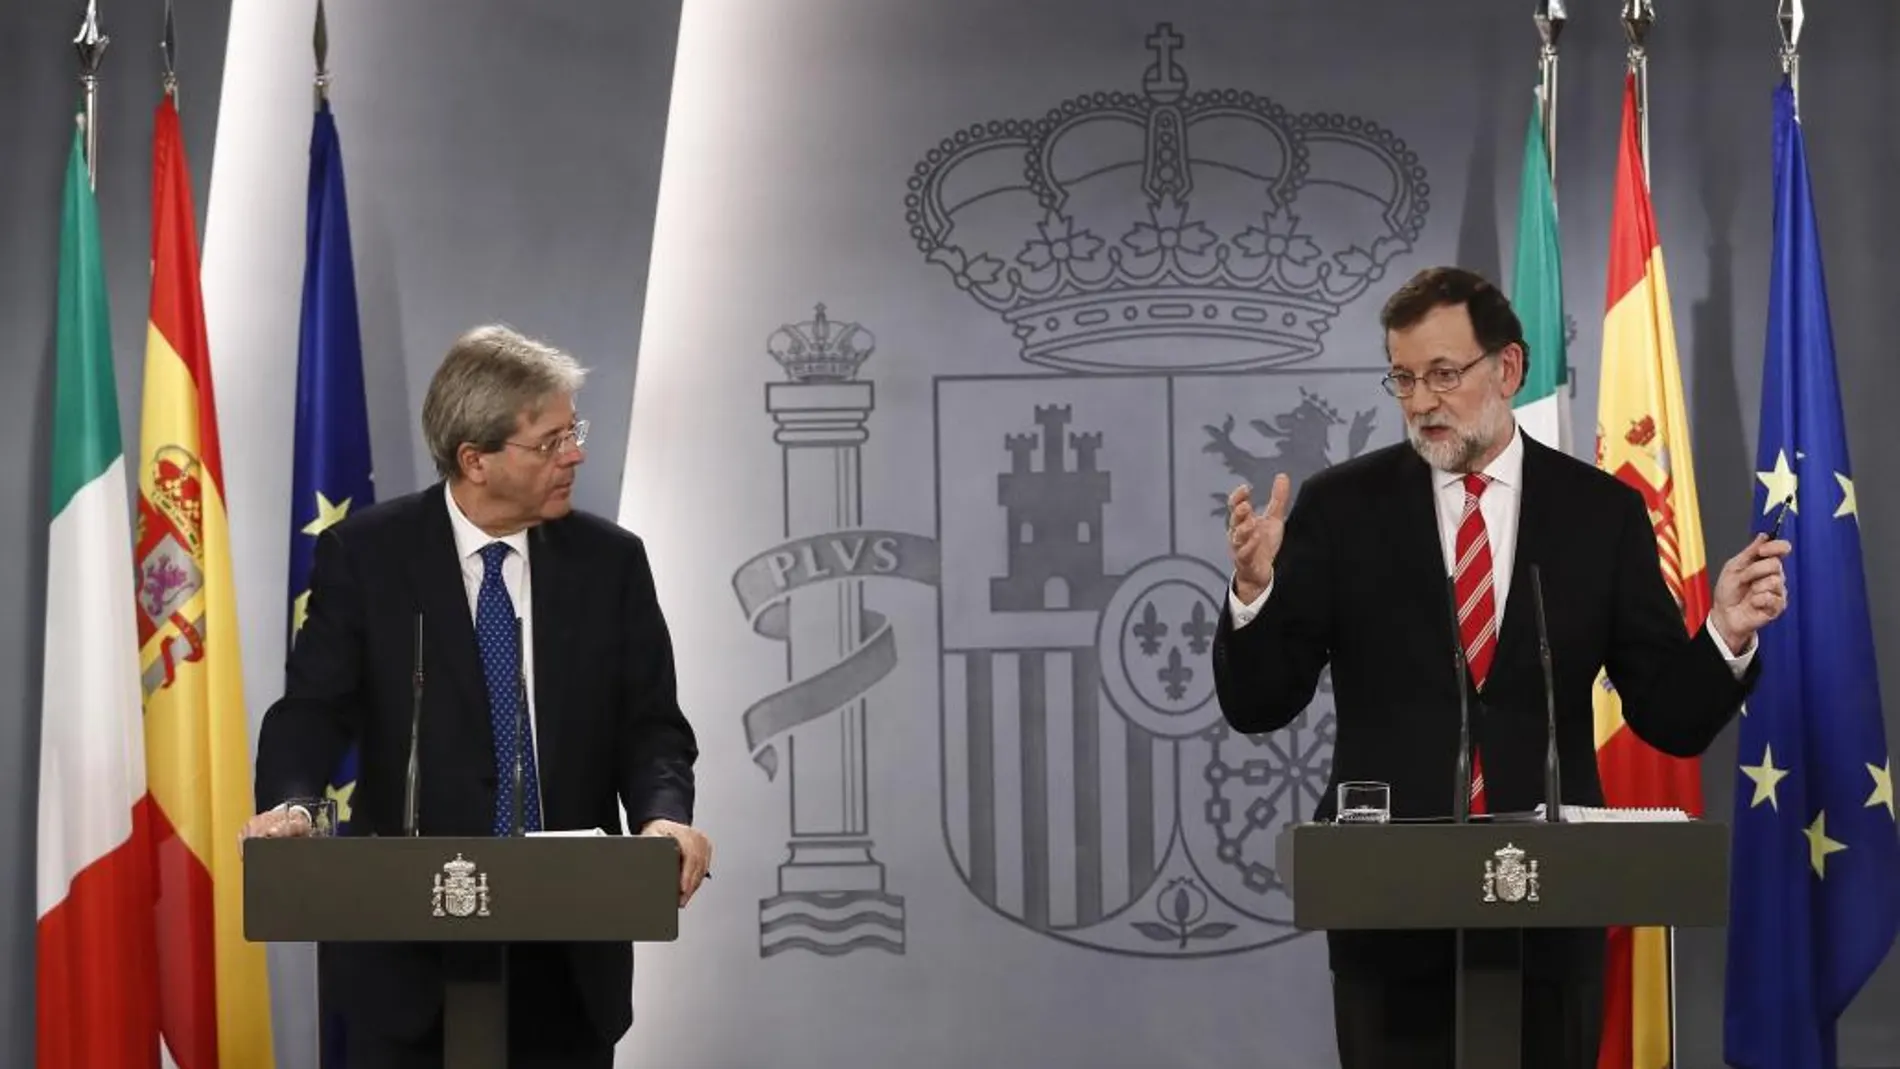 El primer ministro de Italia, Paolo Gentiloni, y el presidente del Gobierno, Mariano Rajoy, durante la rueda de prensa ofrecida tras la reunión